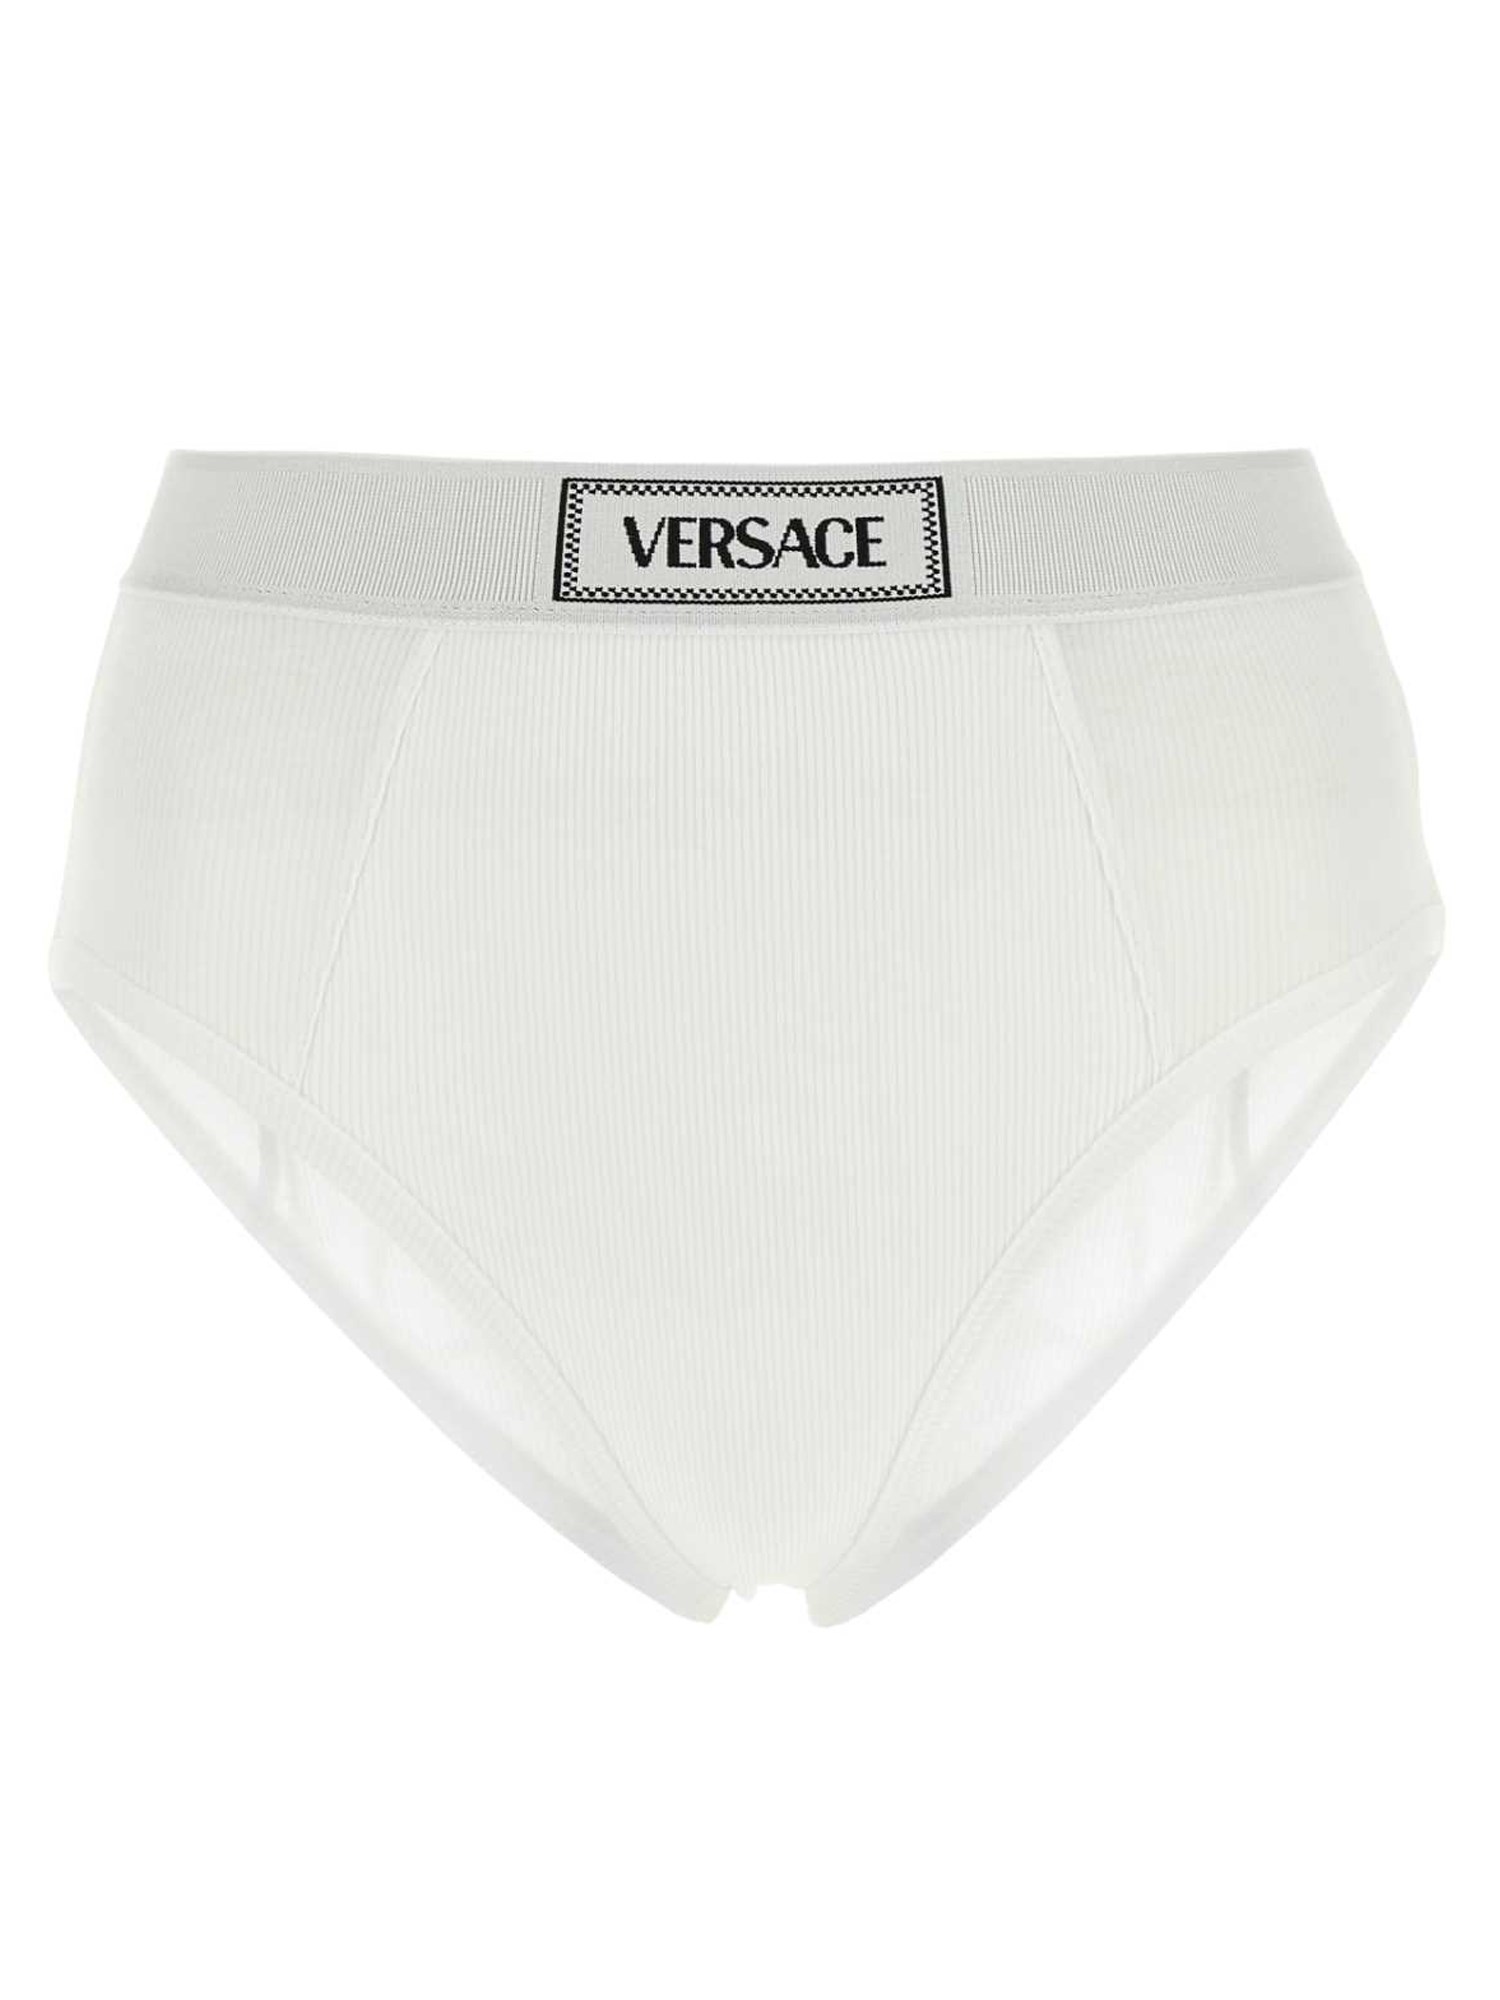 Versace versace cotton slip.